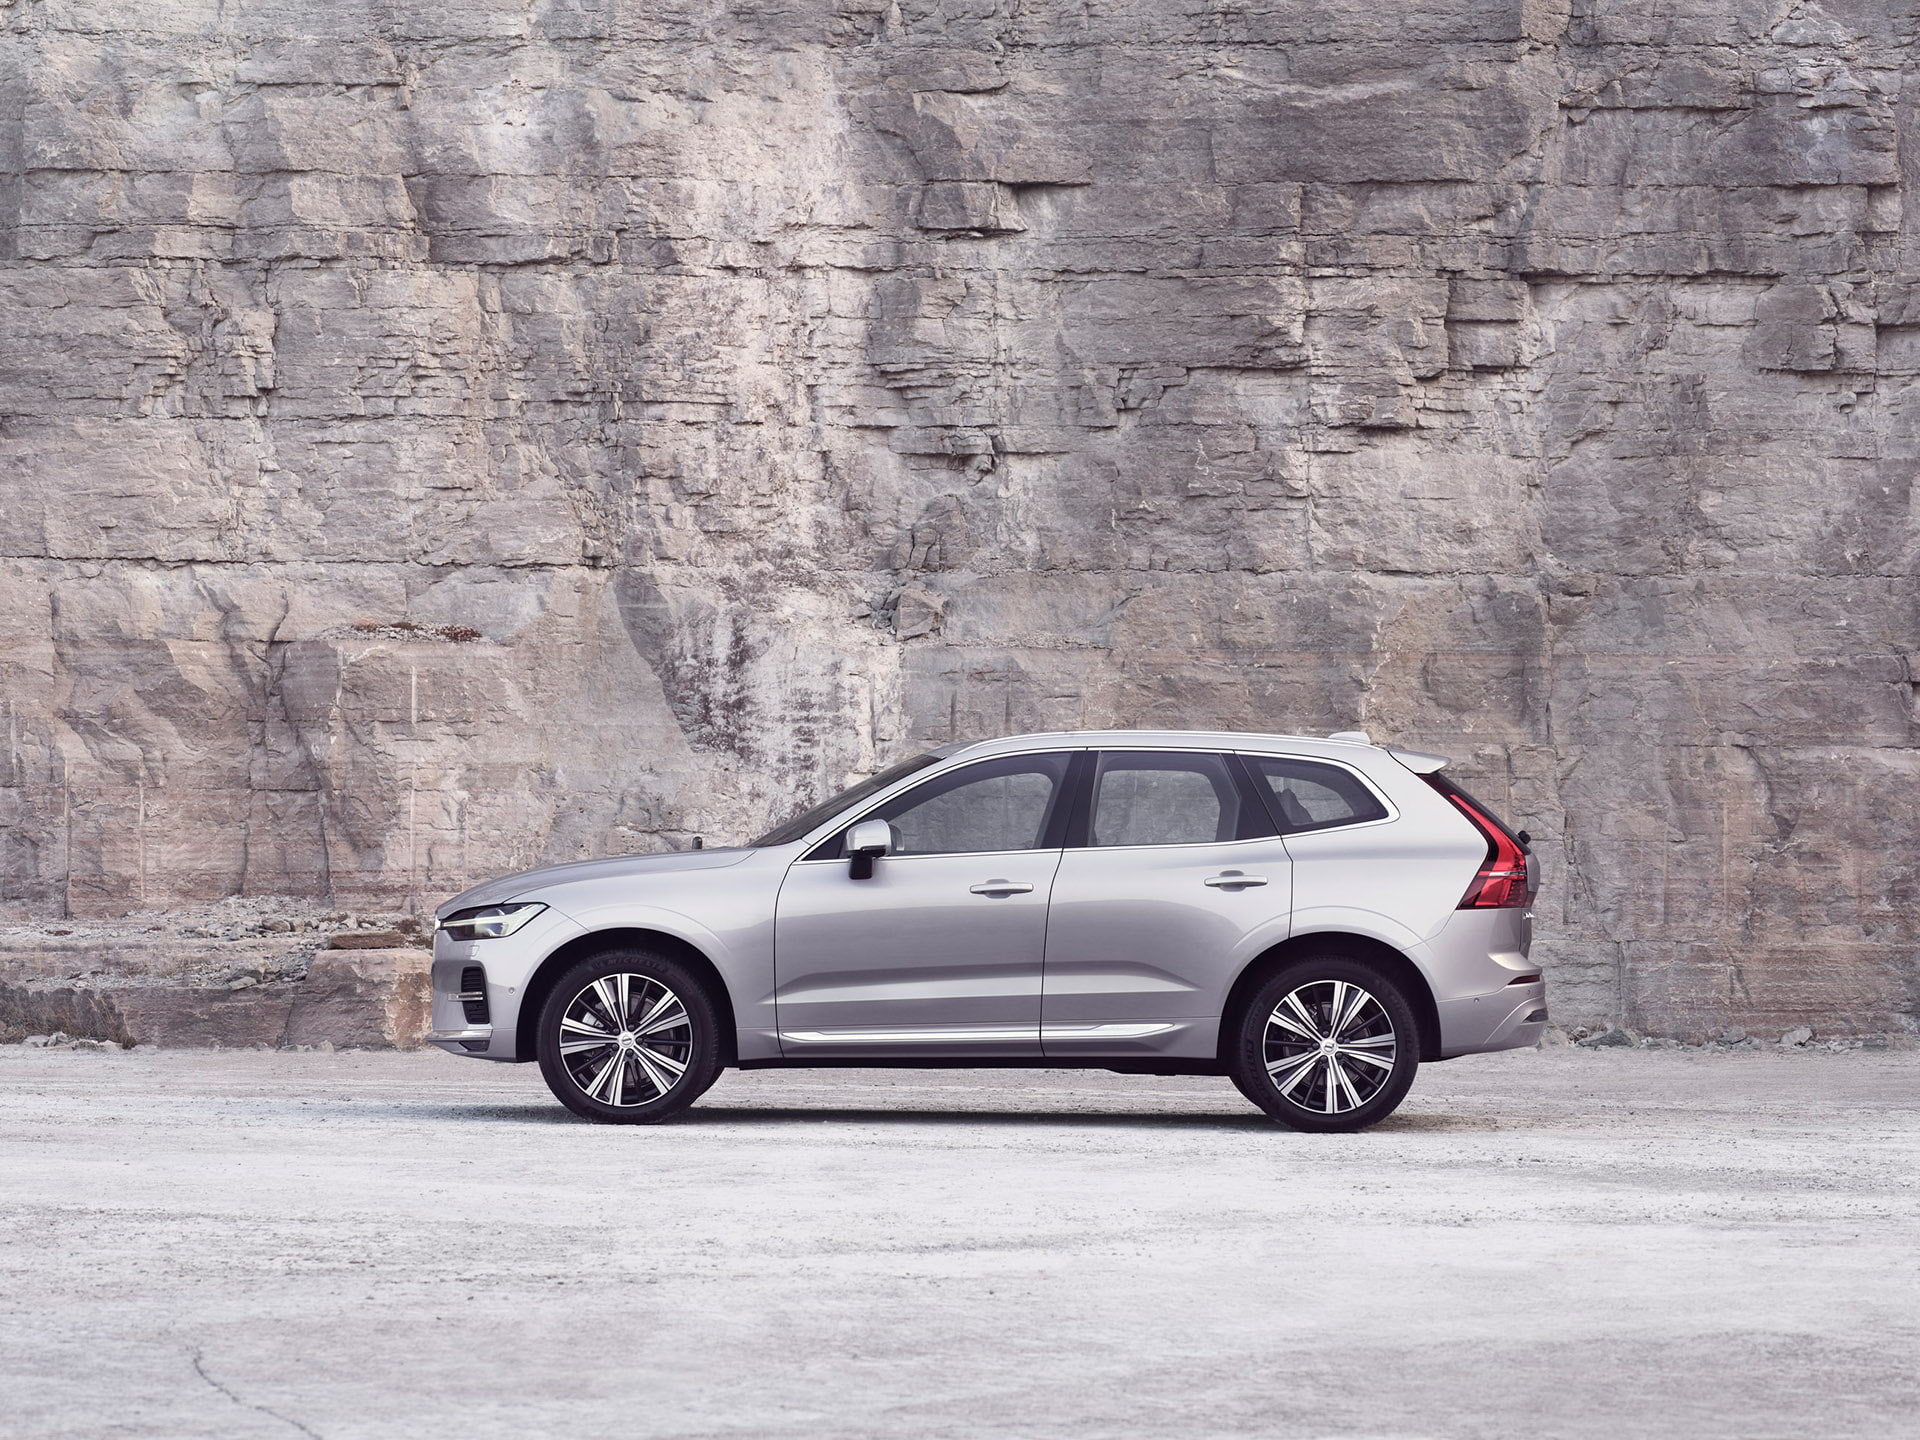 Srebrni Volvo XC60 mirno stoji ispred stjenovitog zida.